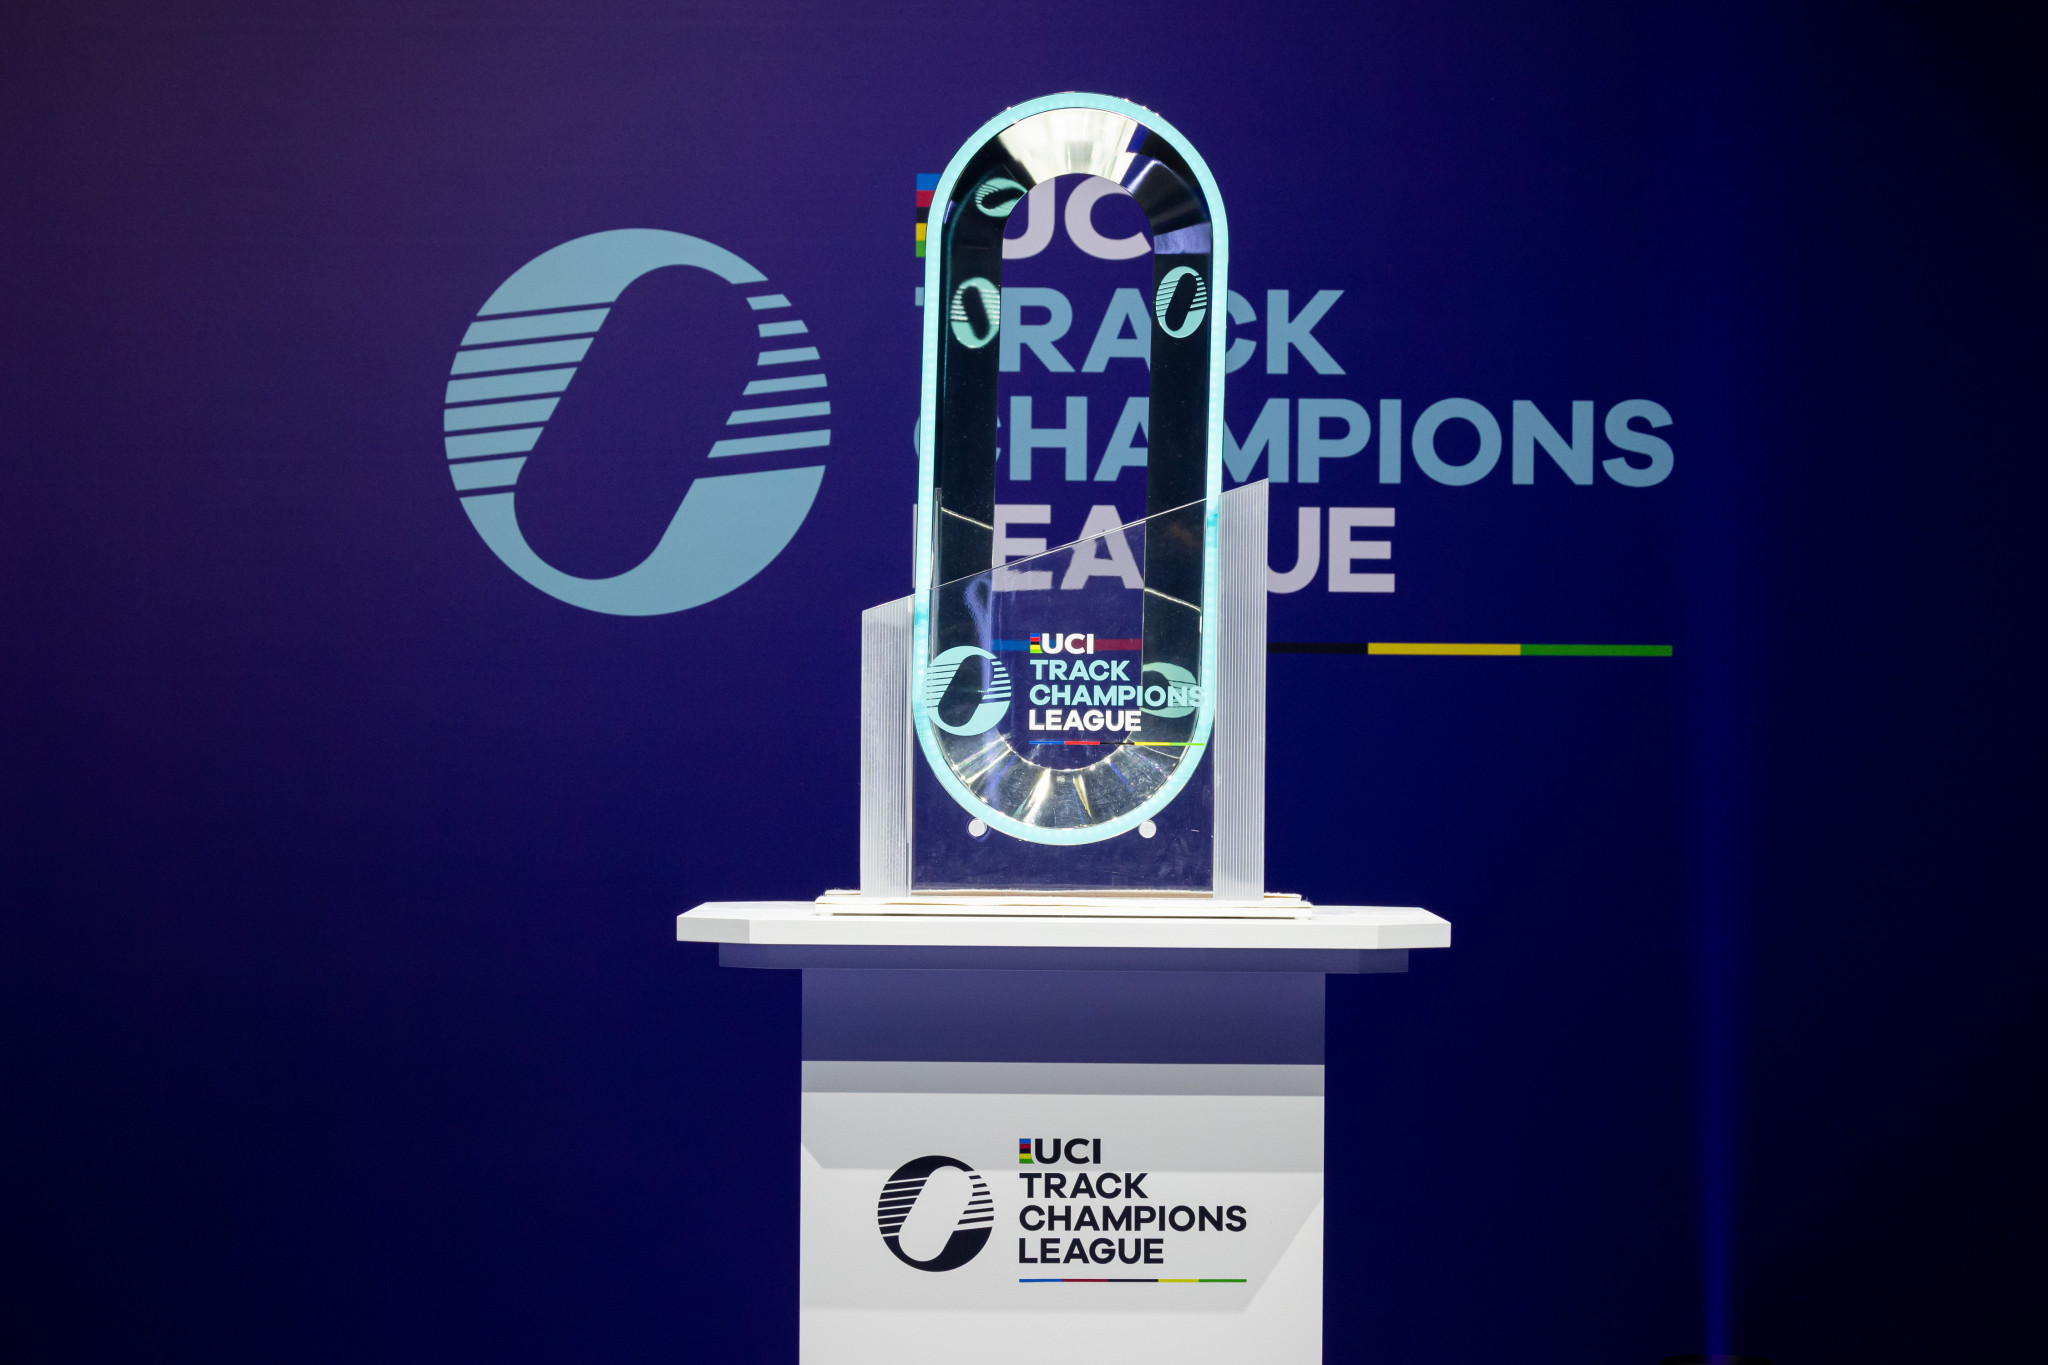 Les vainqueurs des quatre catégories à la fin de la saison recevront une réplique du trophée © UCI